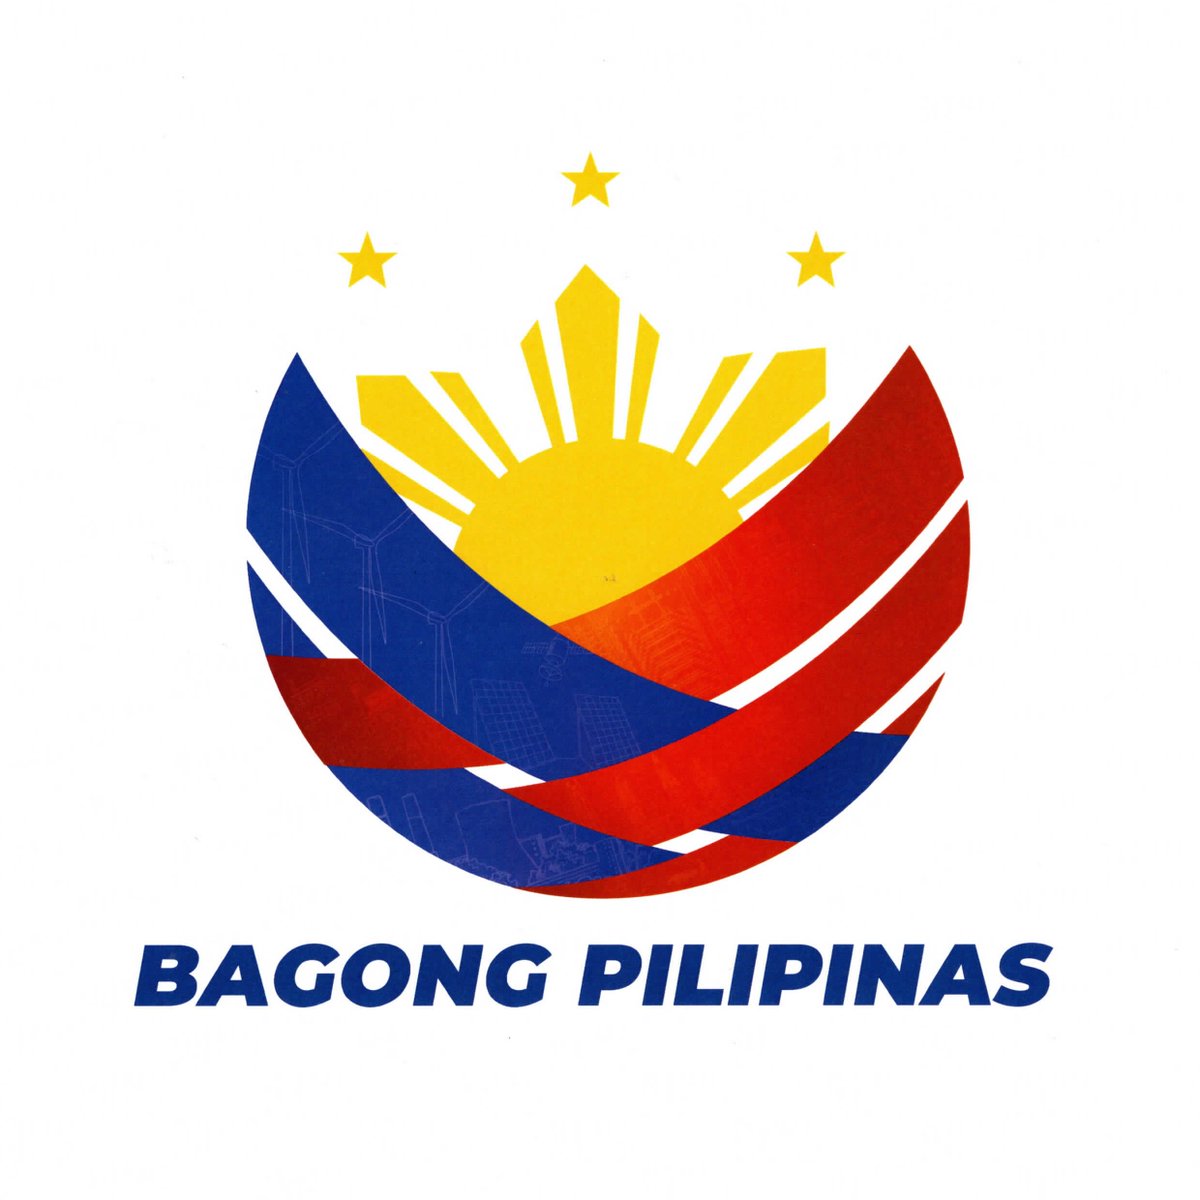 LOOK: Former VP Leni Robredo's #IpanaloNa10ParaSaLahat campaign logo last #Halalan2022 and Ferdinand Marcos, Jr.'s 'Bagong Pilipinas' campaign logo.

'Bagong Pilipinas' has been launched as the administration's 'brand of governance and leadership'.